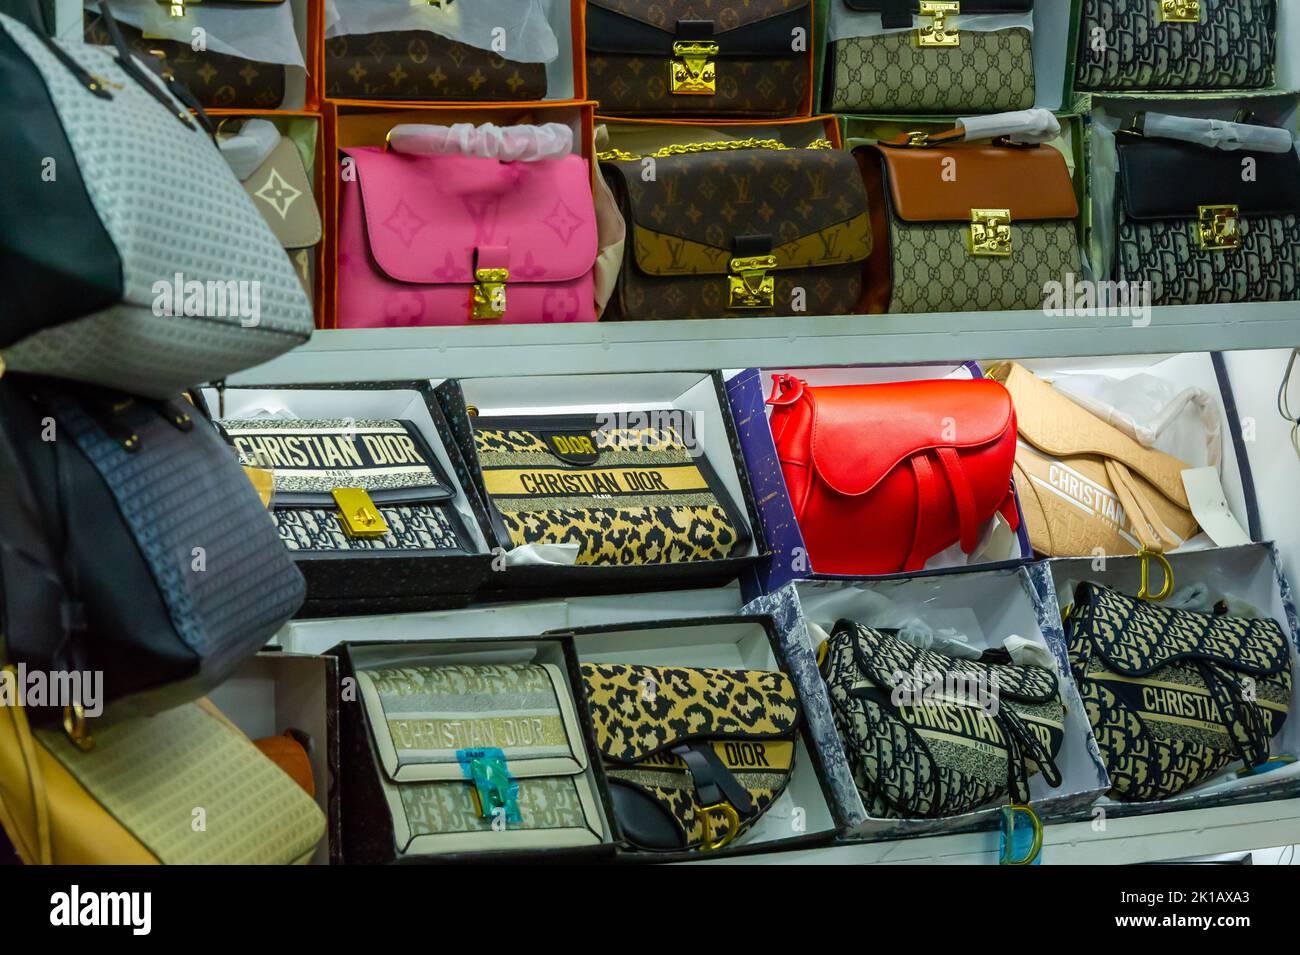 China, Hong Kong, Stanley Market, Shop Display of Fake Purses and Handbags  Stock Photo - Alamy